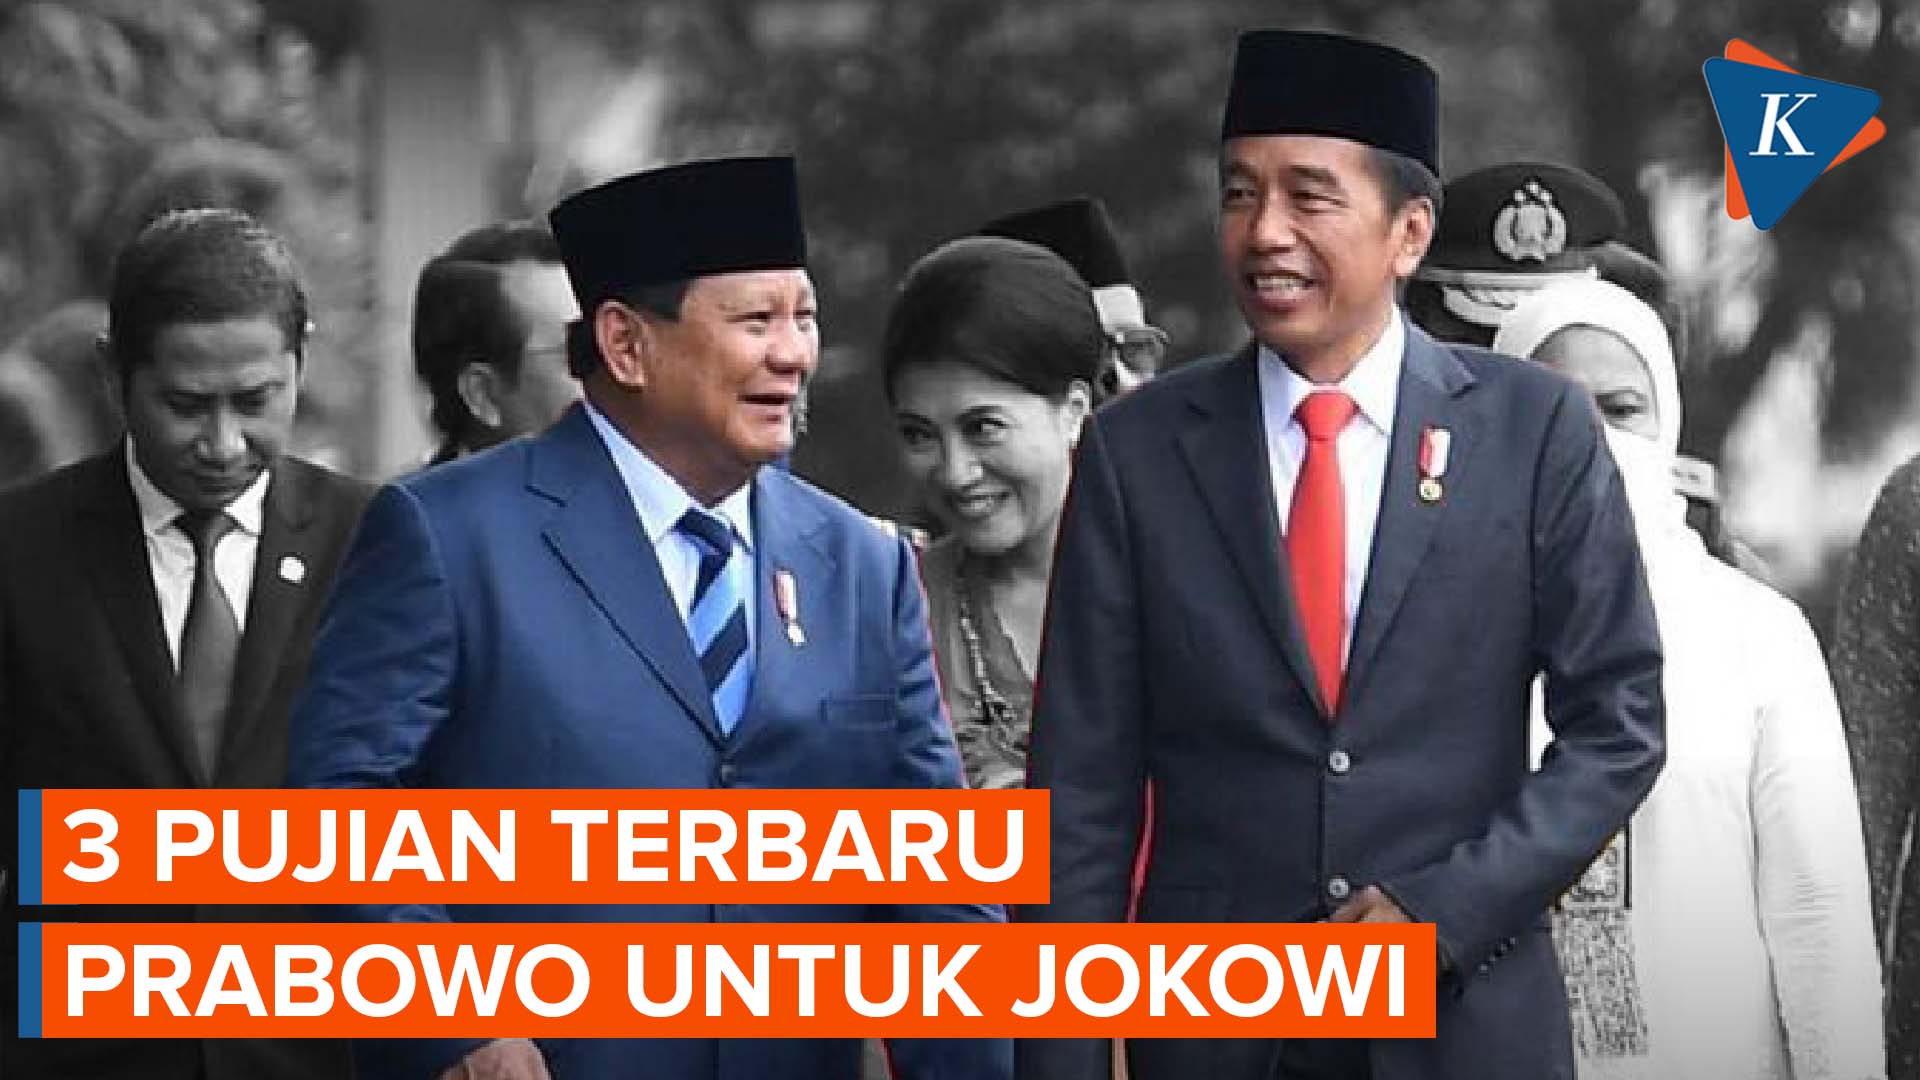 Prabowo Kembali Puji Kinerja Jokowi Selama Menjabat Jadi Presiden